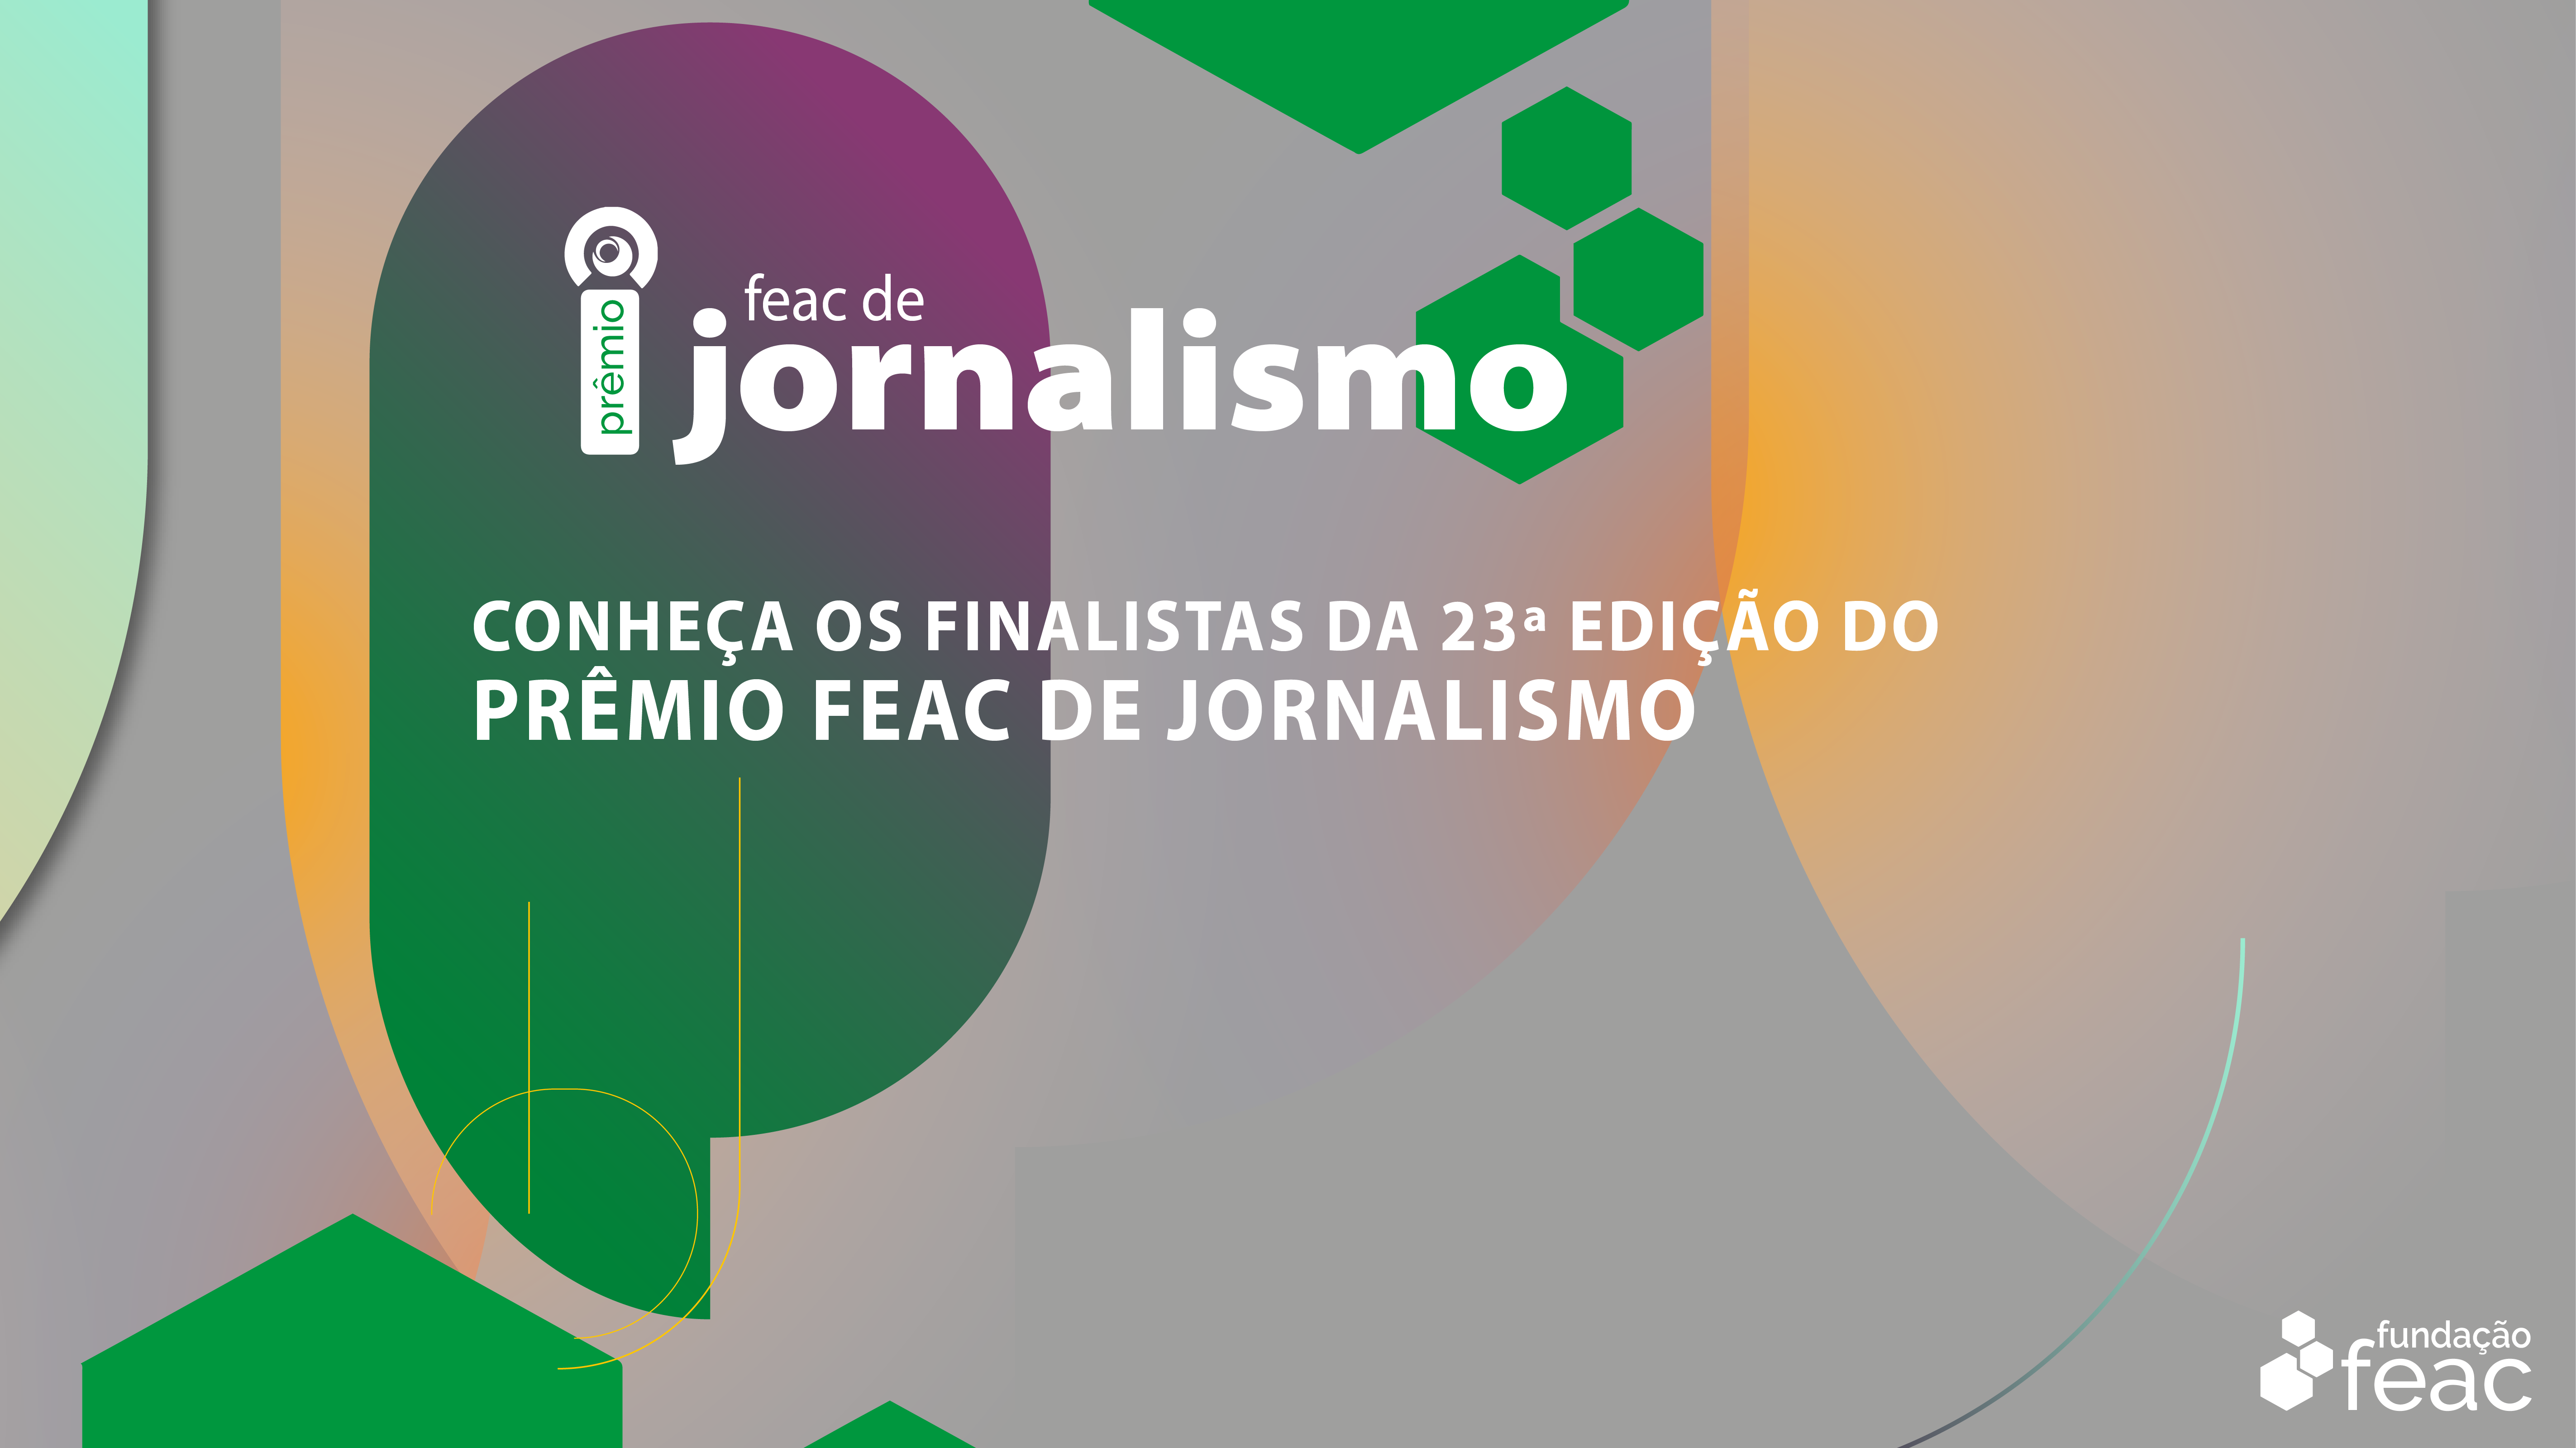 Conheça os finalistas da 23ª edição do Prêmio FEAC de Jornalismo